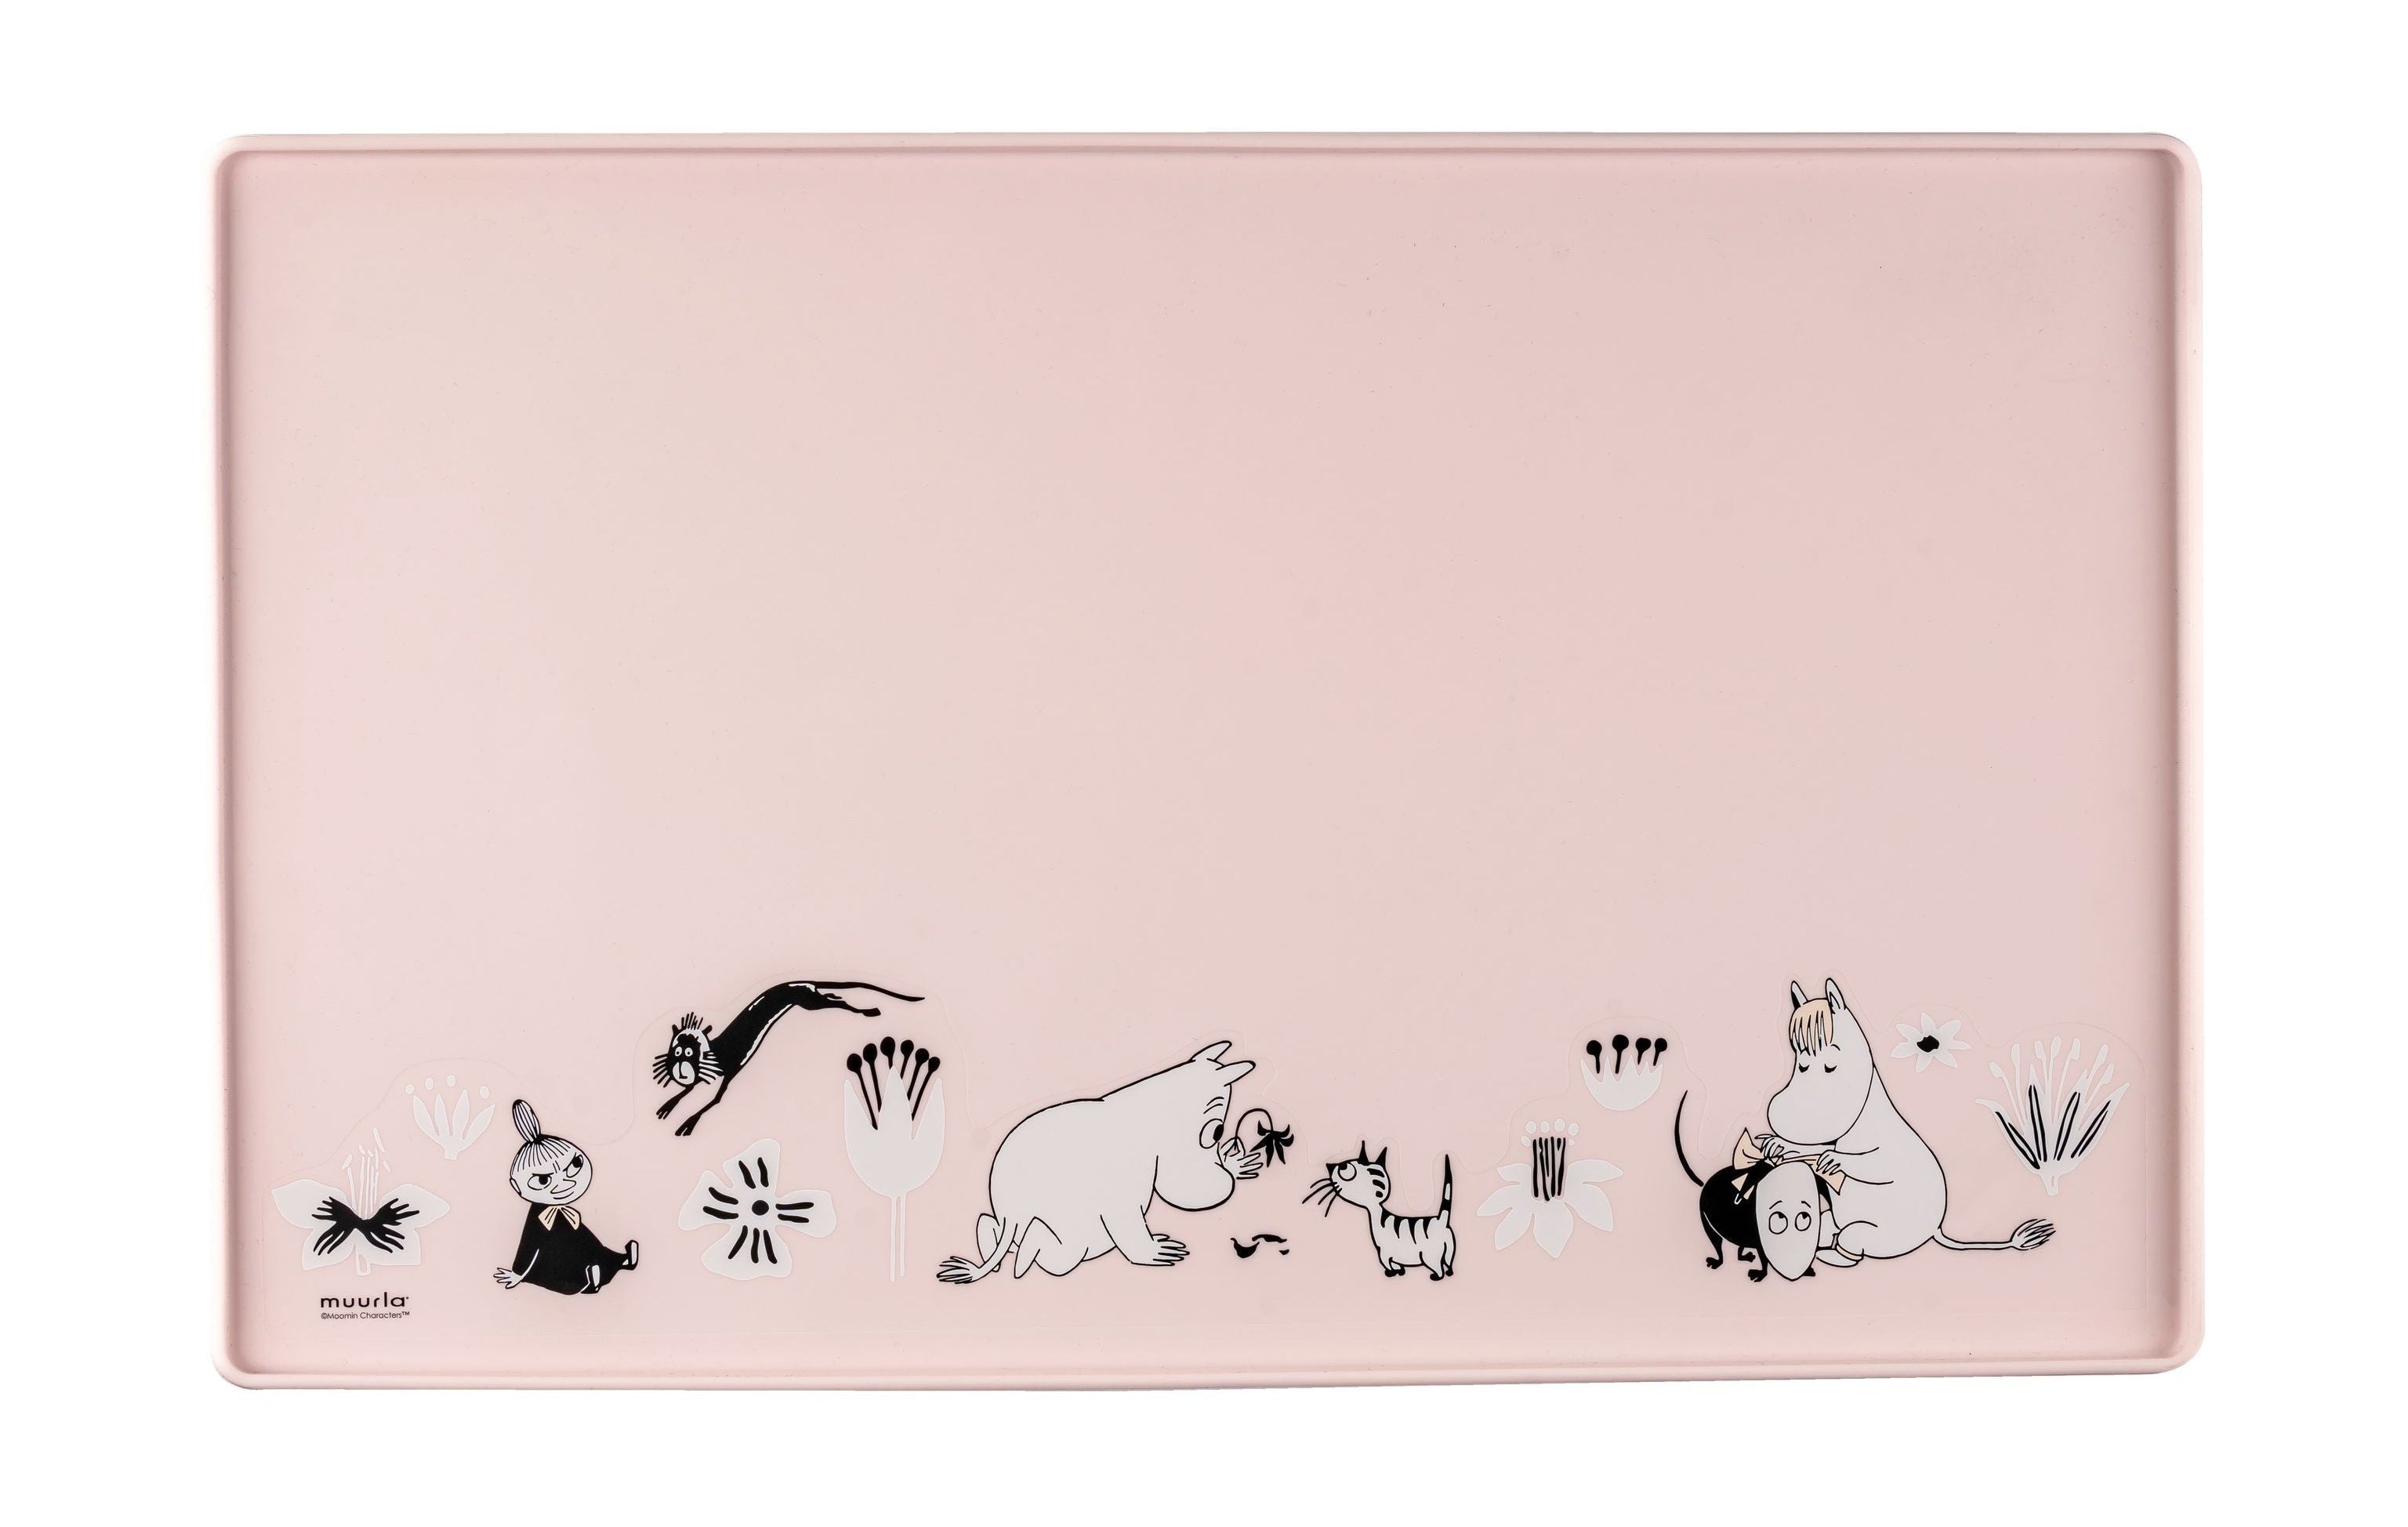 Muurla Moomin Animali del tappetino in silicone, rosa